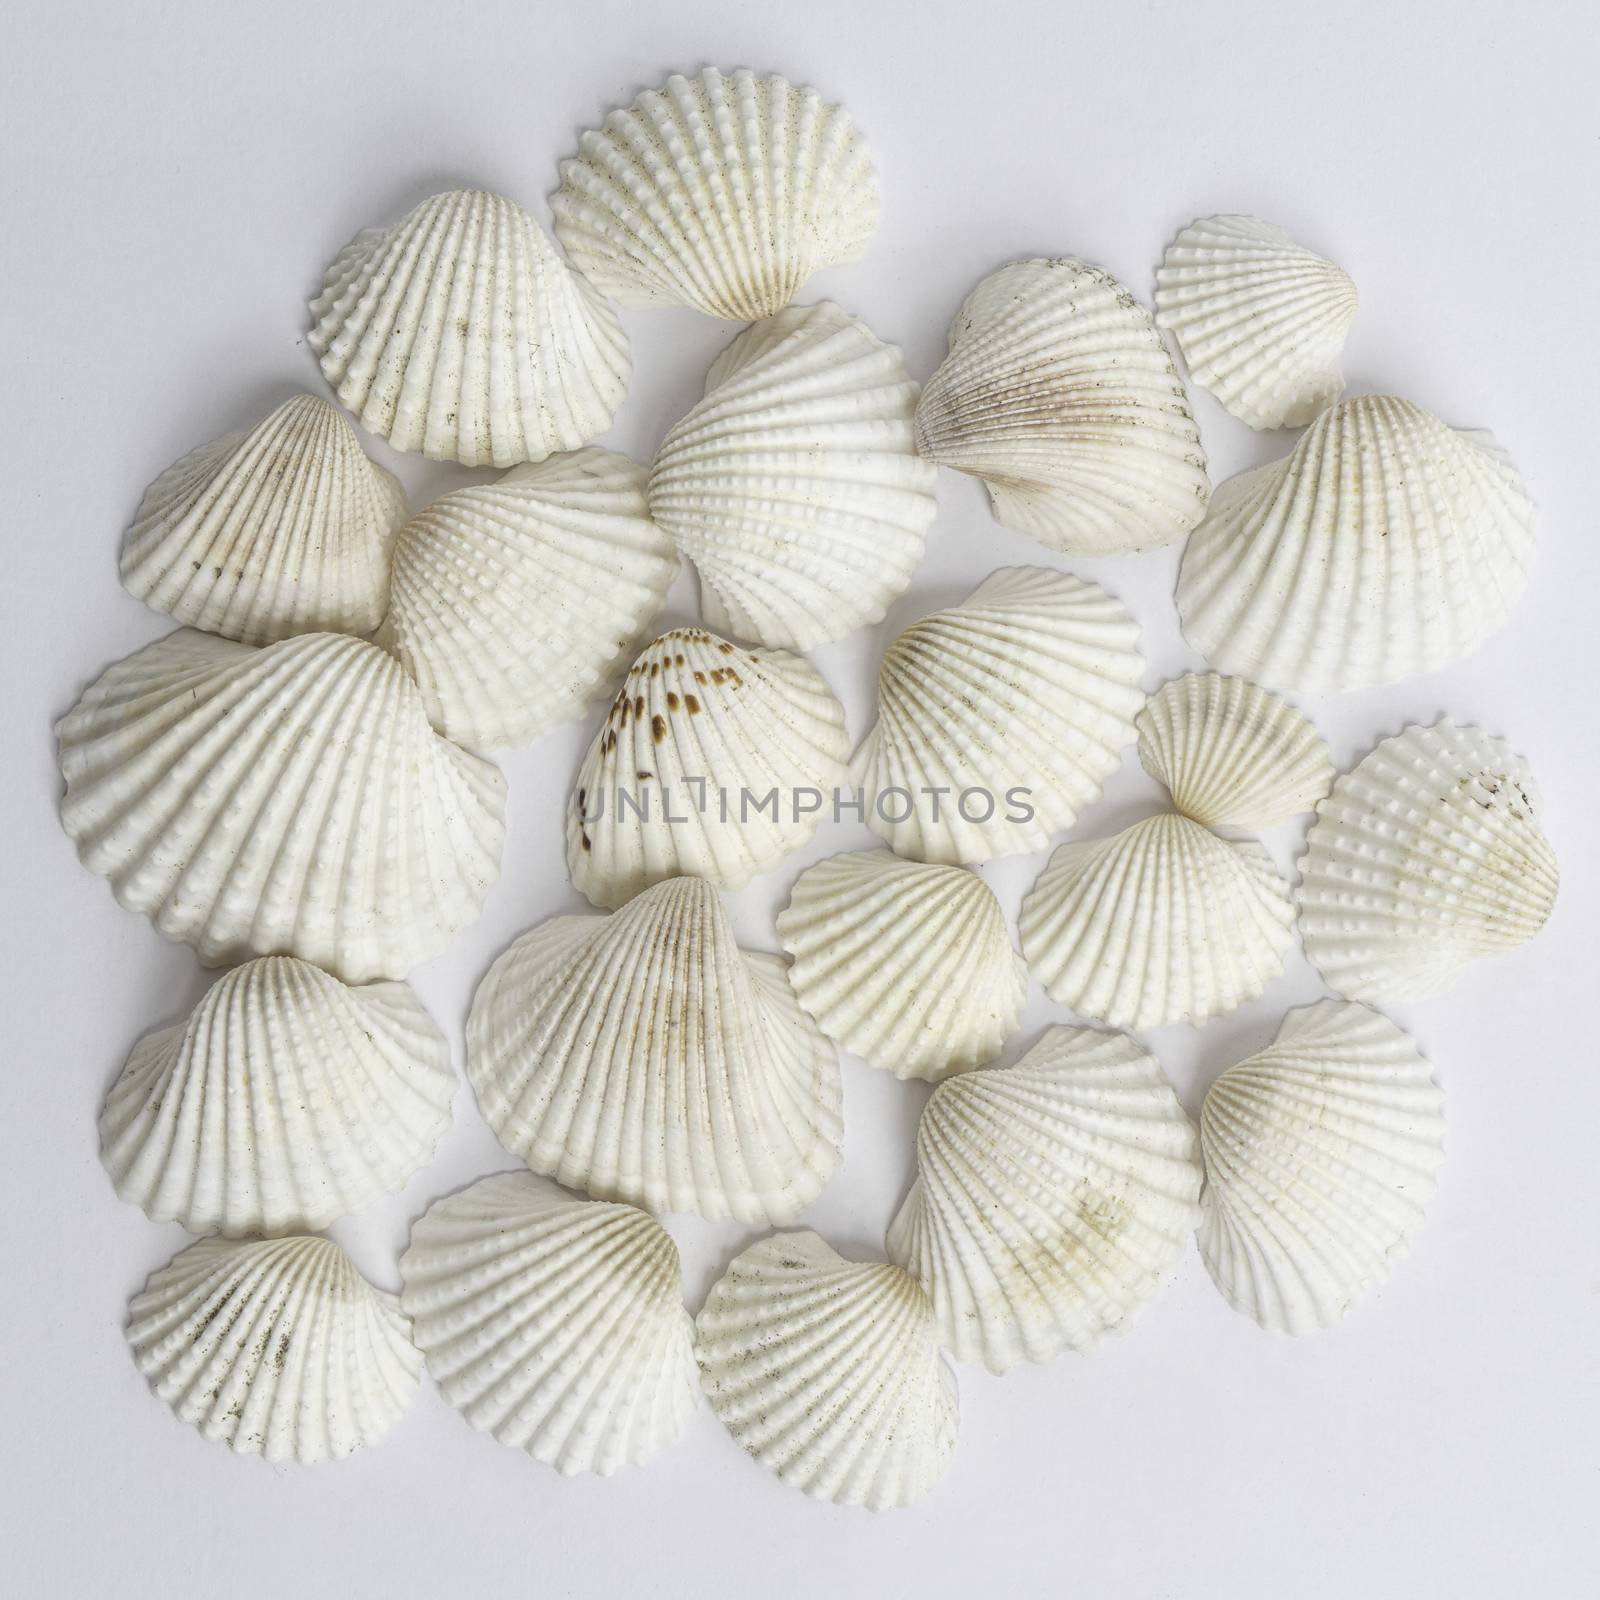 White shells by sergiodv